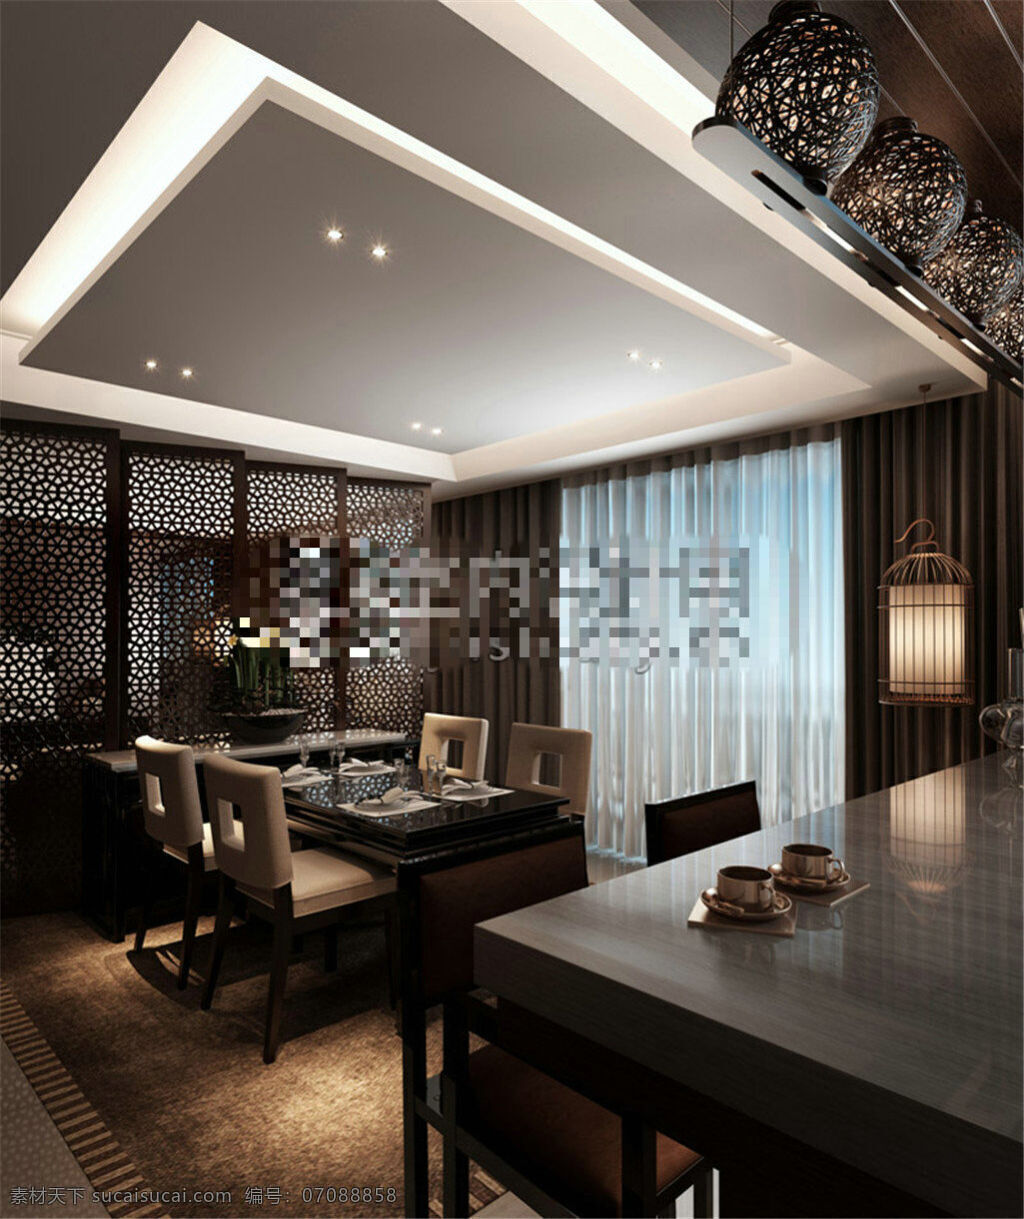 中式 餐厅 模型 室内设计 室内模型 室内装饰设计 模型素材 客厅 3d 3dmax 建筑装饰 客厅装饰 黑色